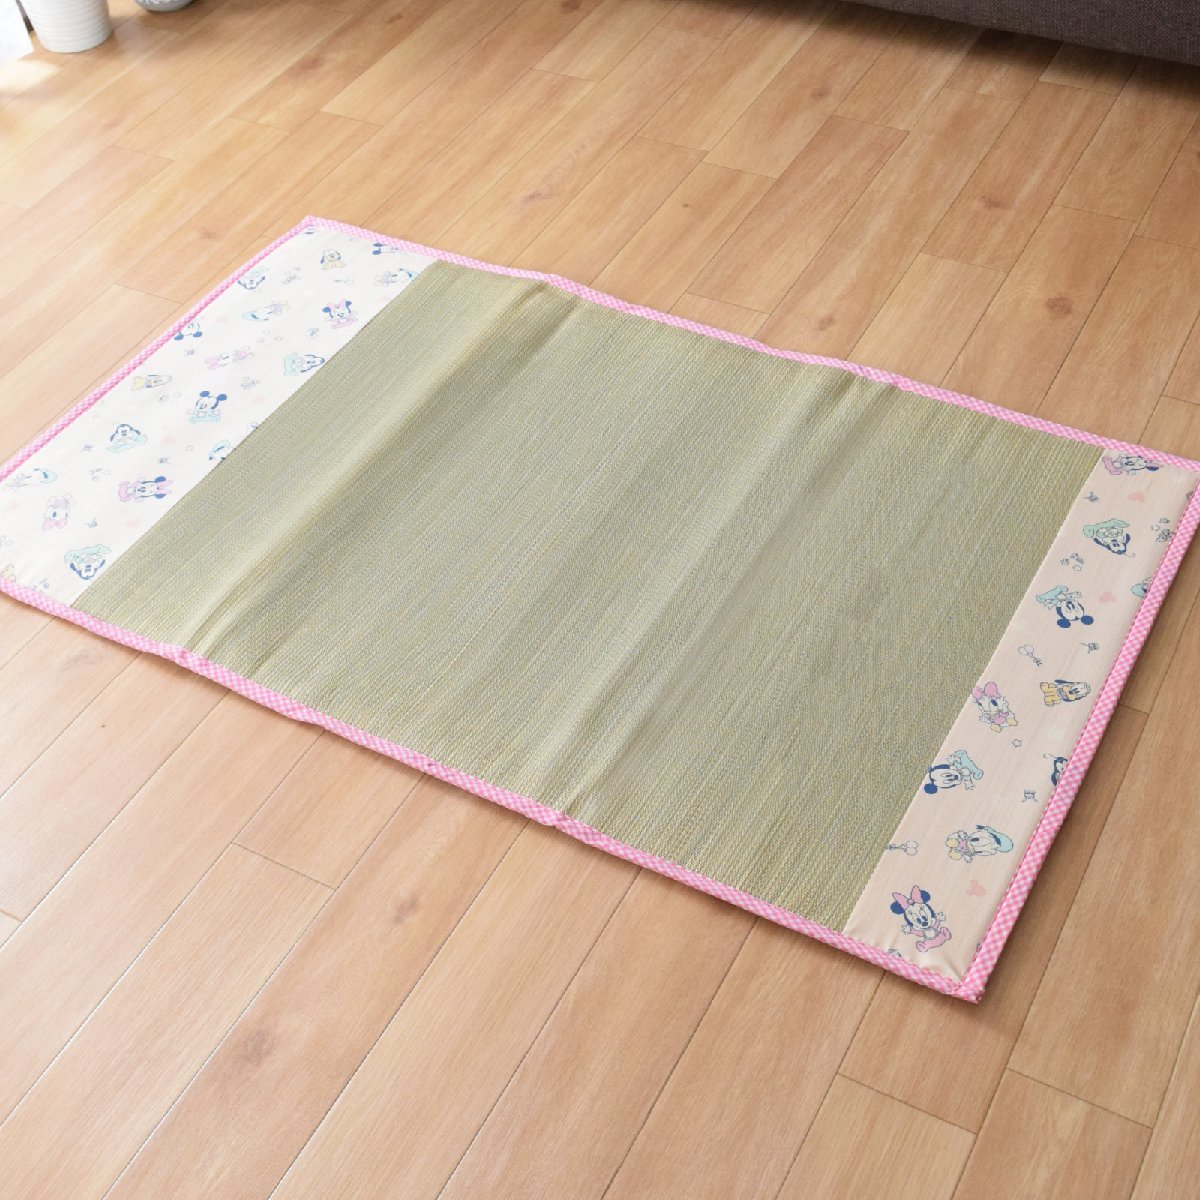 i. наматрасник ... матрац плетеный коврик примерно 70×120cm коврик baby ребенок герой Mickey розовый 